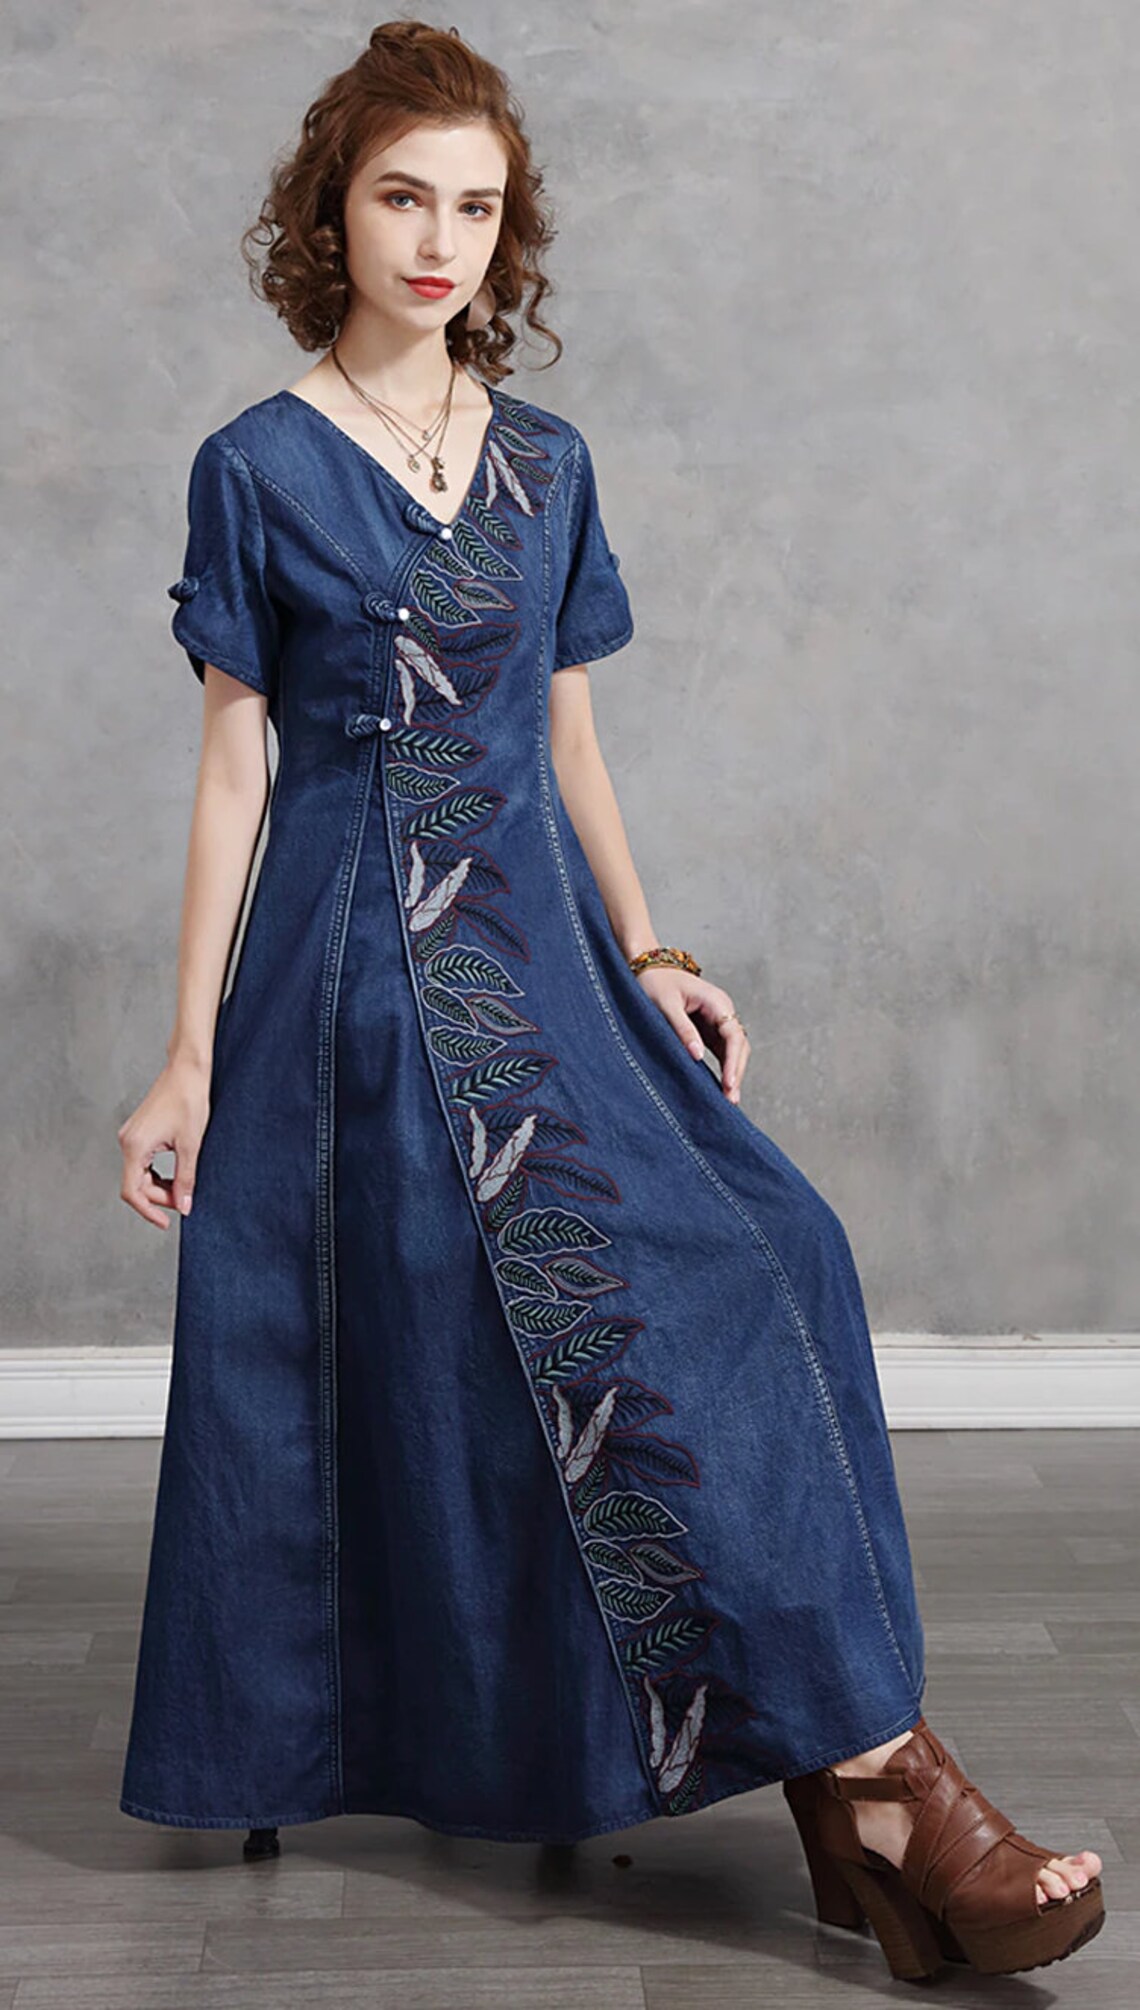 Designer Semale Slim Women's Dresses 2021 Boho New Denim | Etsy